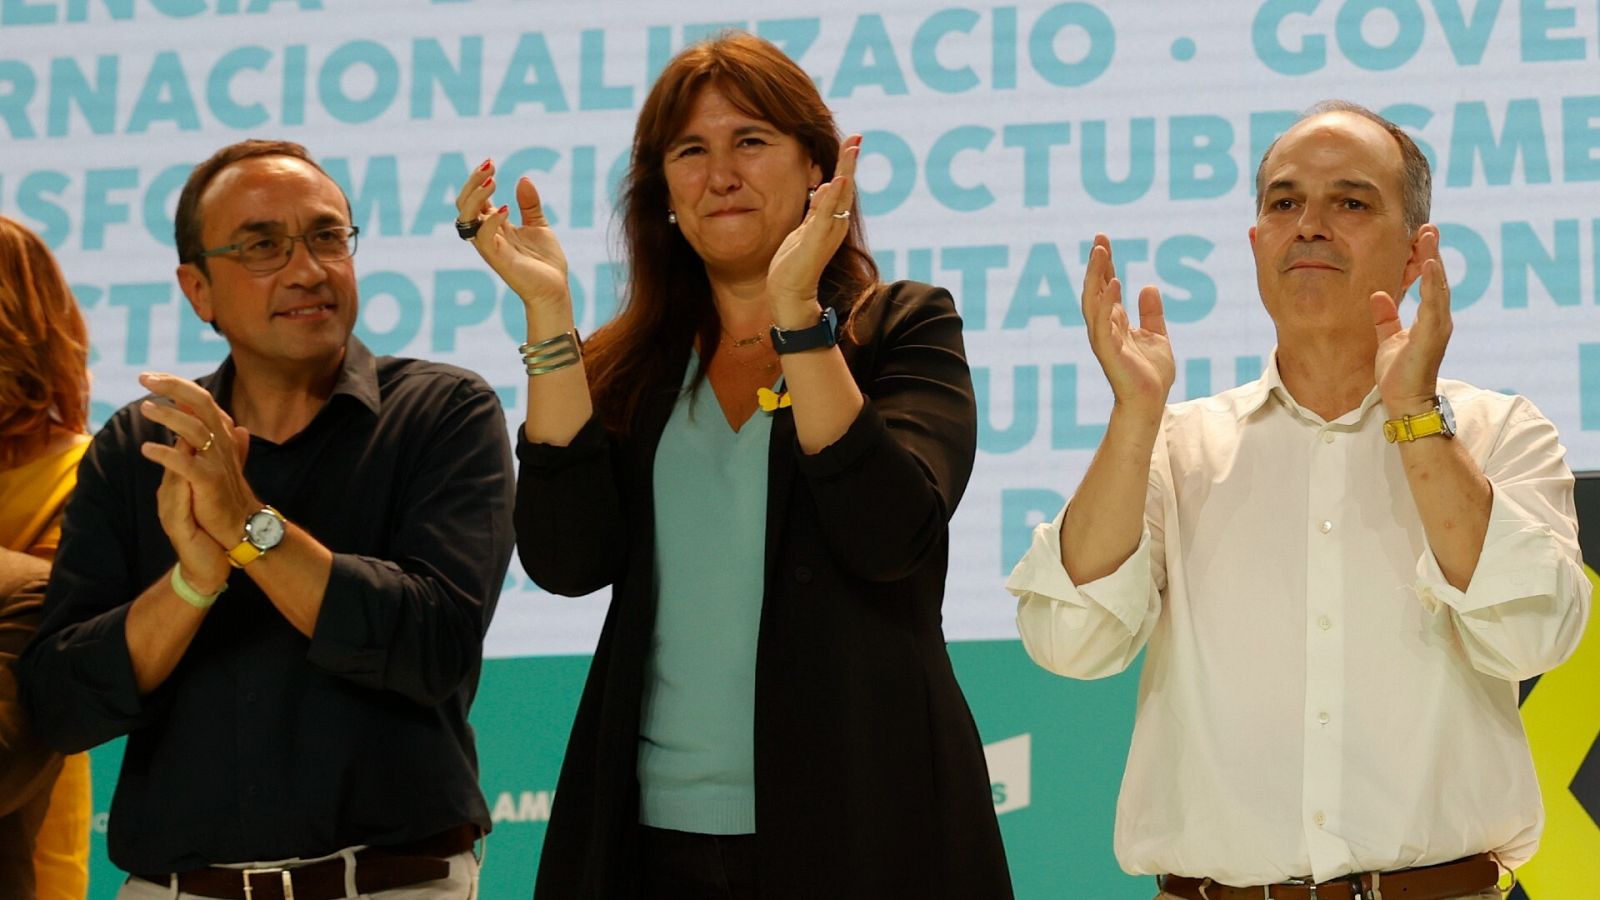 (De izq a der) Josep Rull, nuevo presidente del consell nacional de JxCat; la presidenta del partido, Laura Borràs, y el secretario general de JxCat, Jordi Turull, en un acto del partido. EFE/ Toni Albir